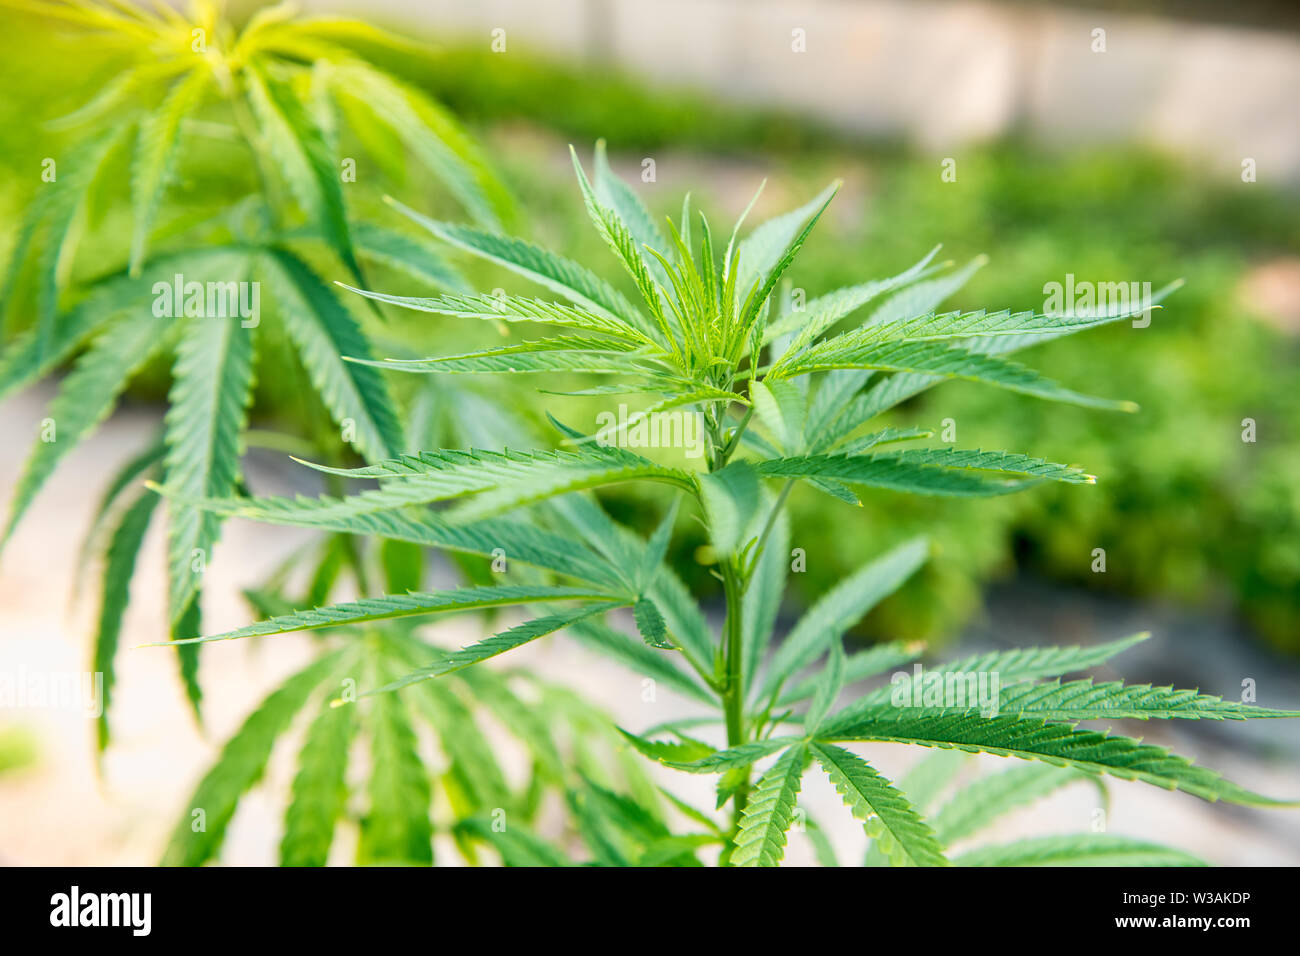 Gros plan sur les feuilles d'une plante de cannabis, le Cannabis sativa, qui donne à l'extérieur de plus en plus de loisirs populaires médicaments psychotropes Banque D'Images